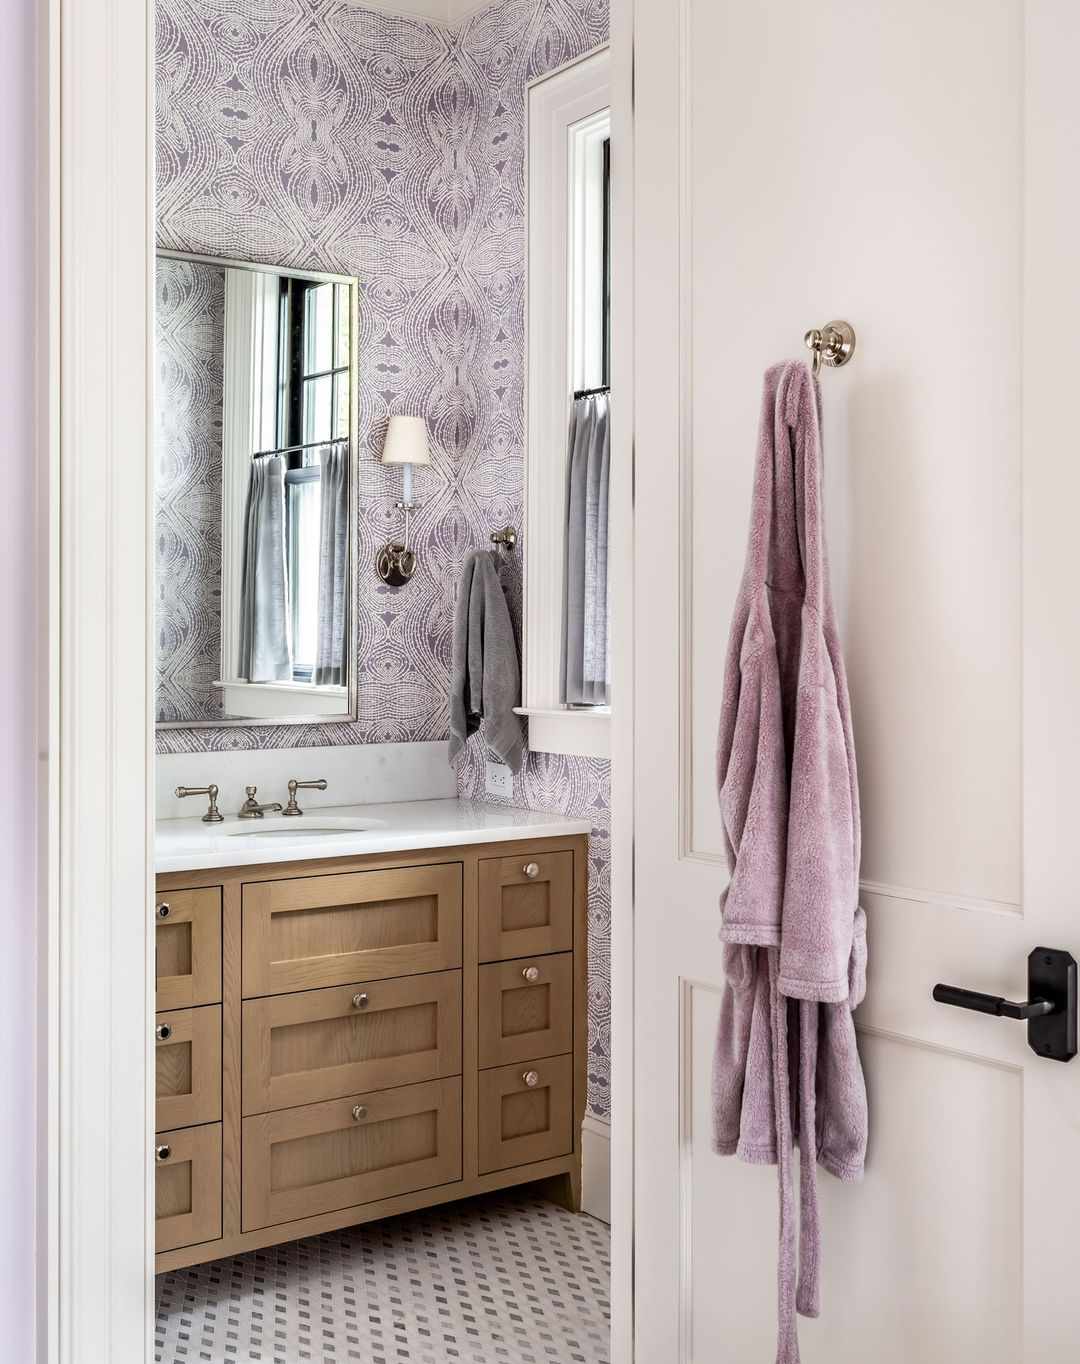 Banheiro sereno e calmo com papel de parede ornamentado em roxo e branco.